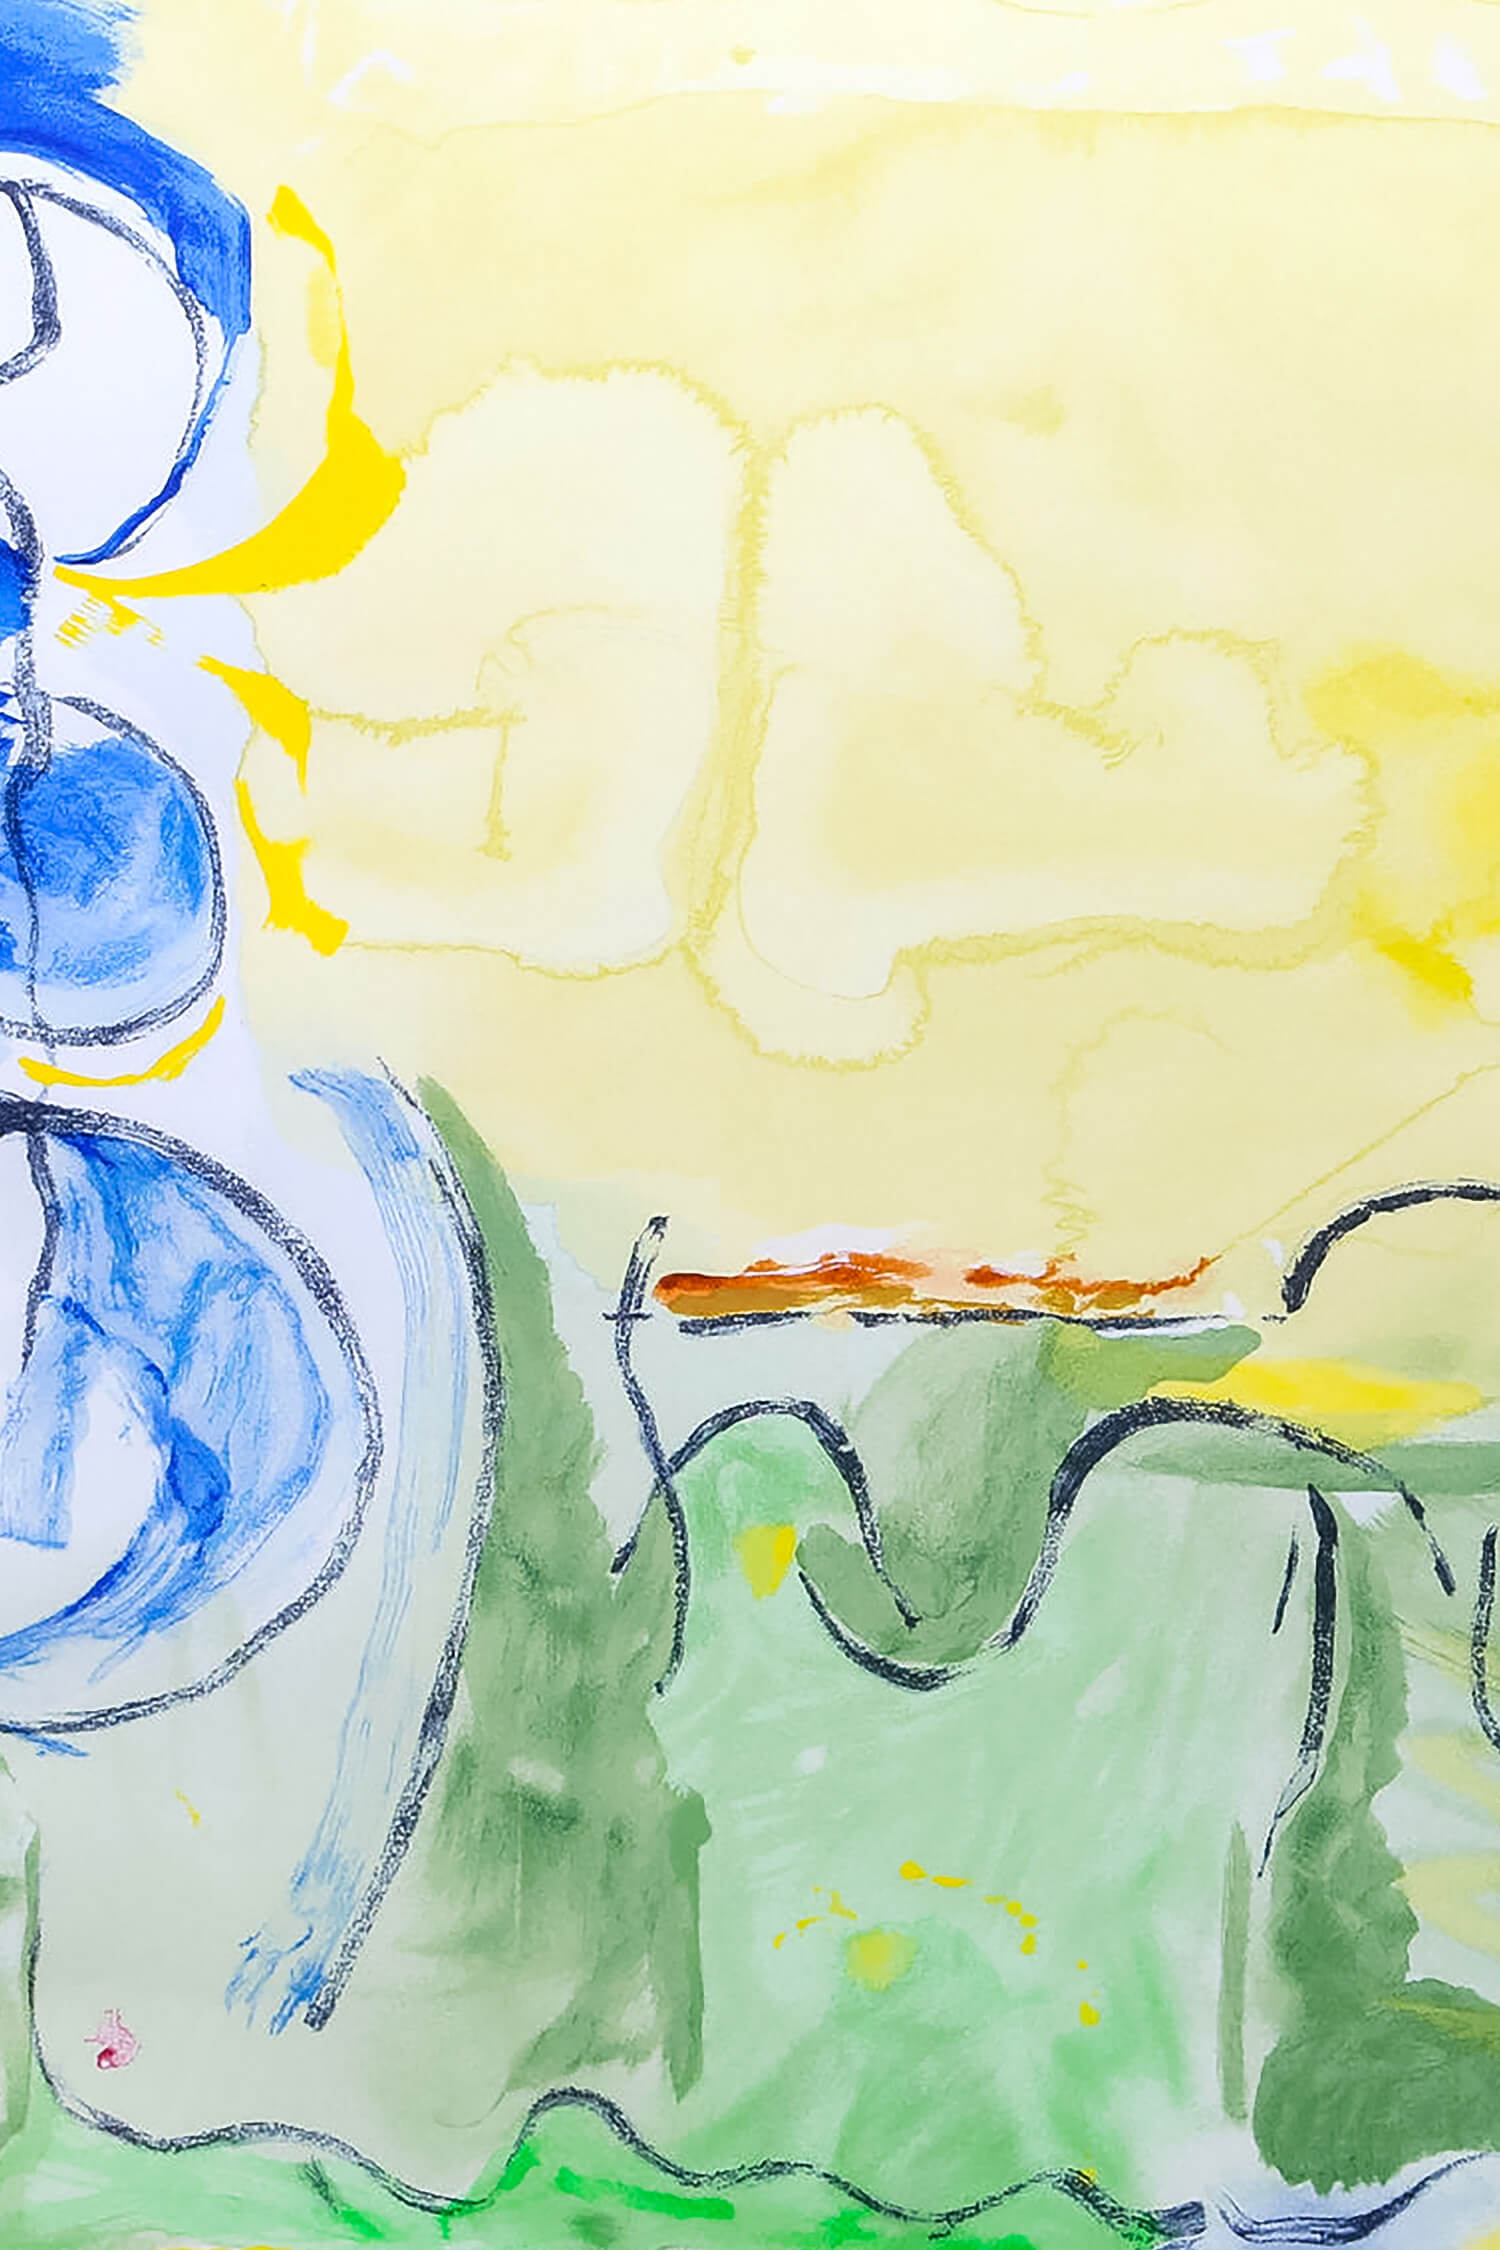 Helen Frankenthaler | Flotilla